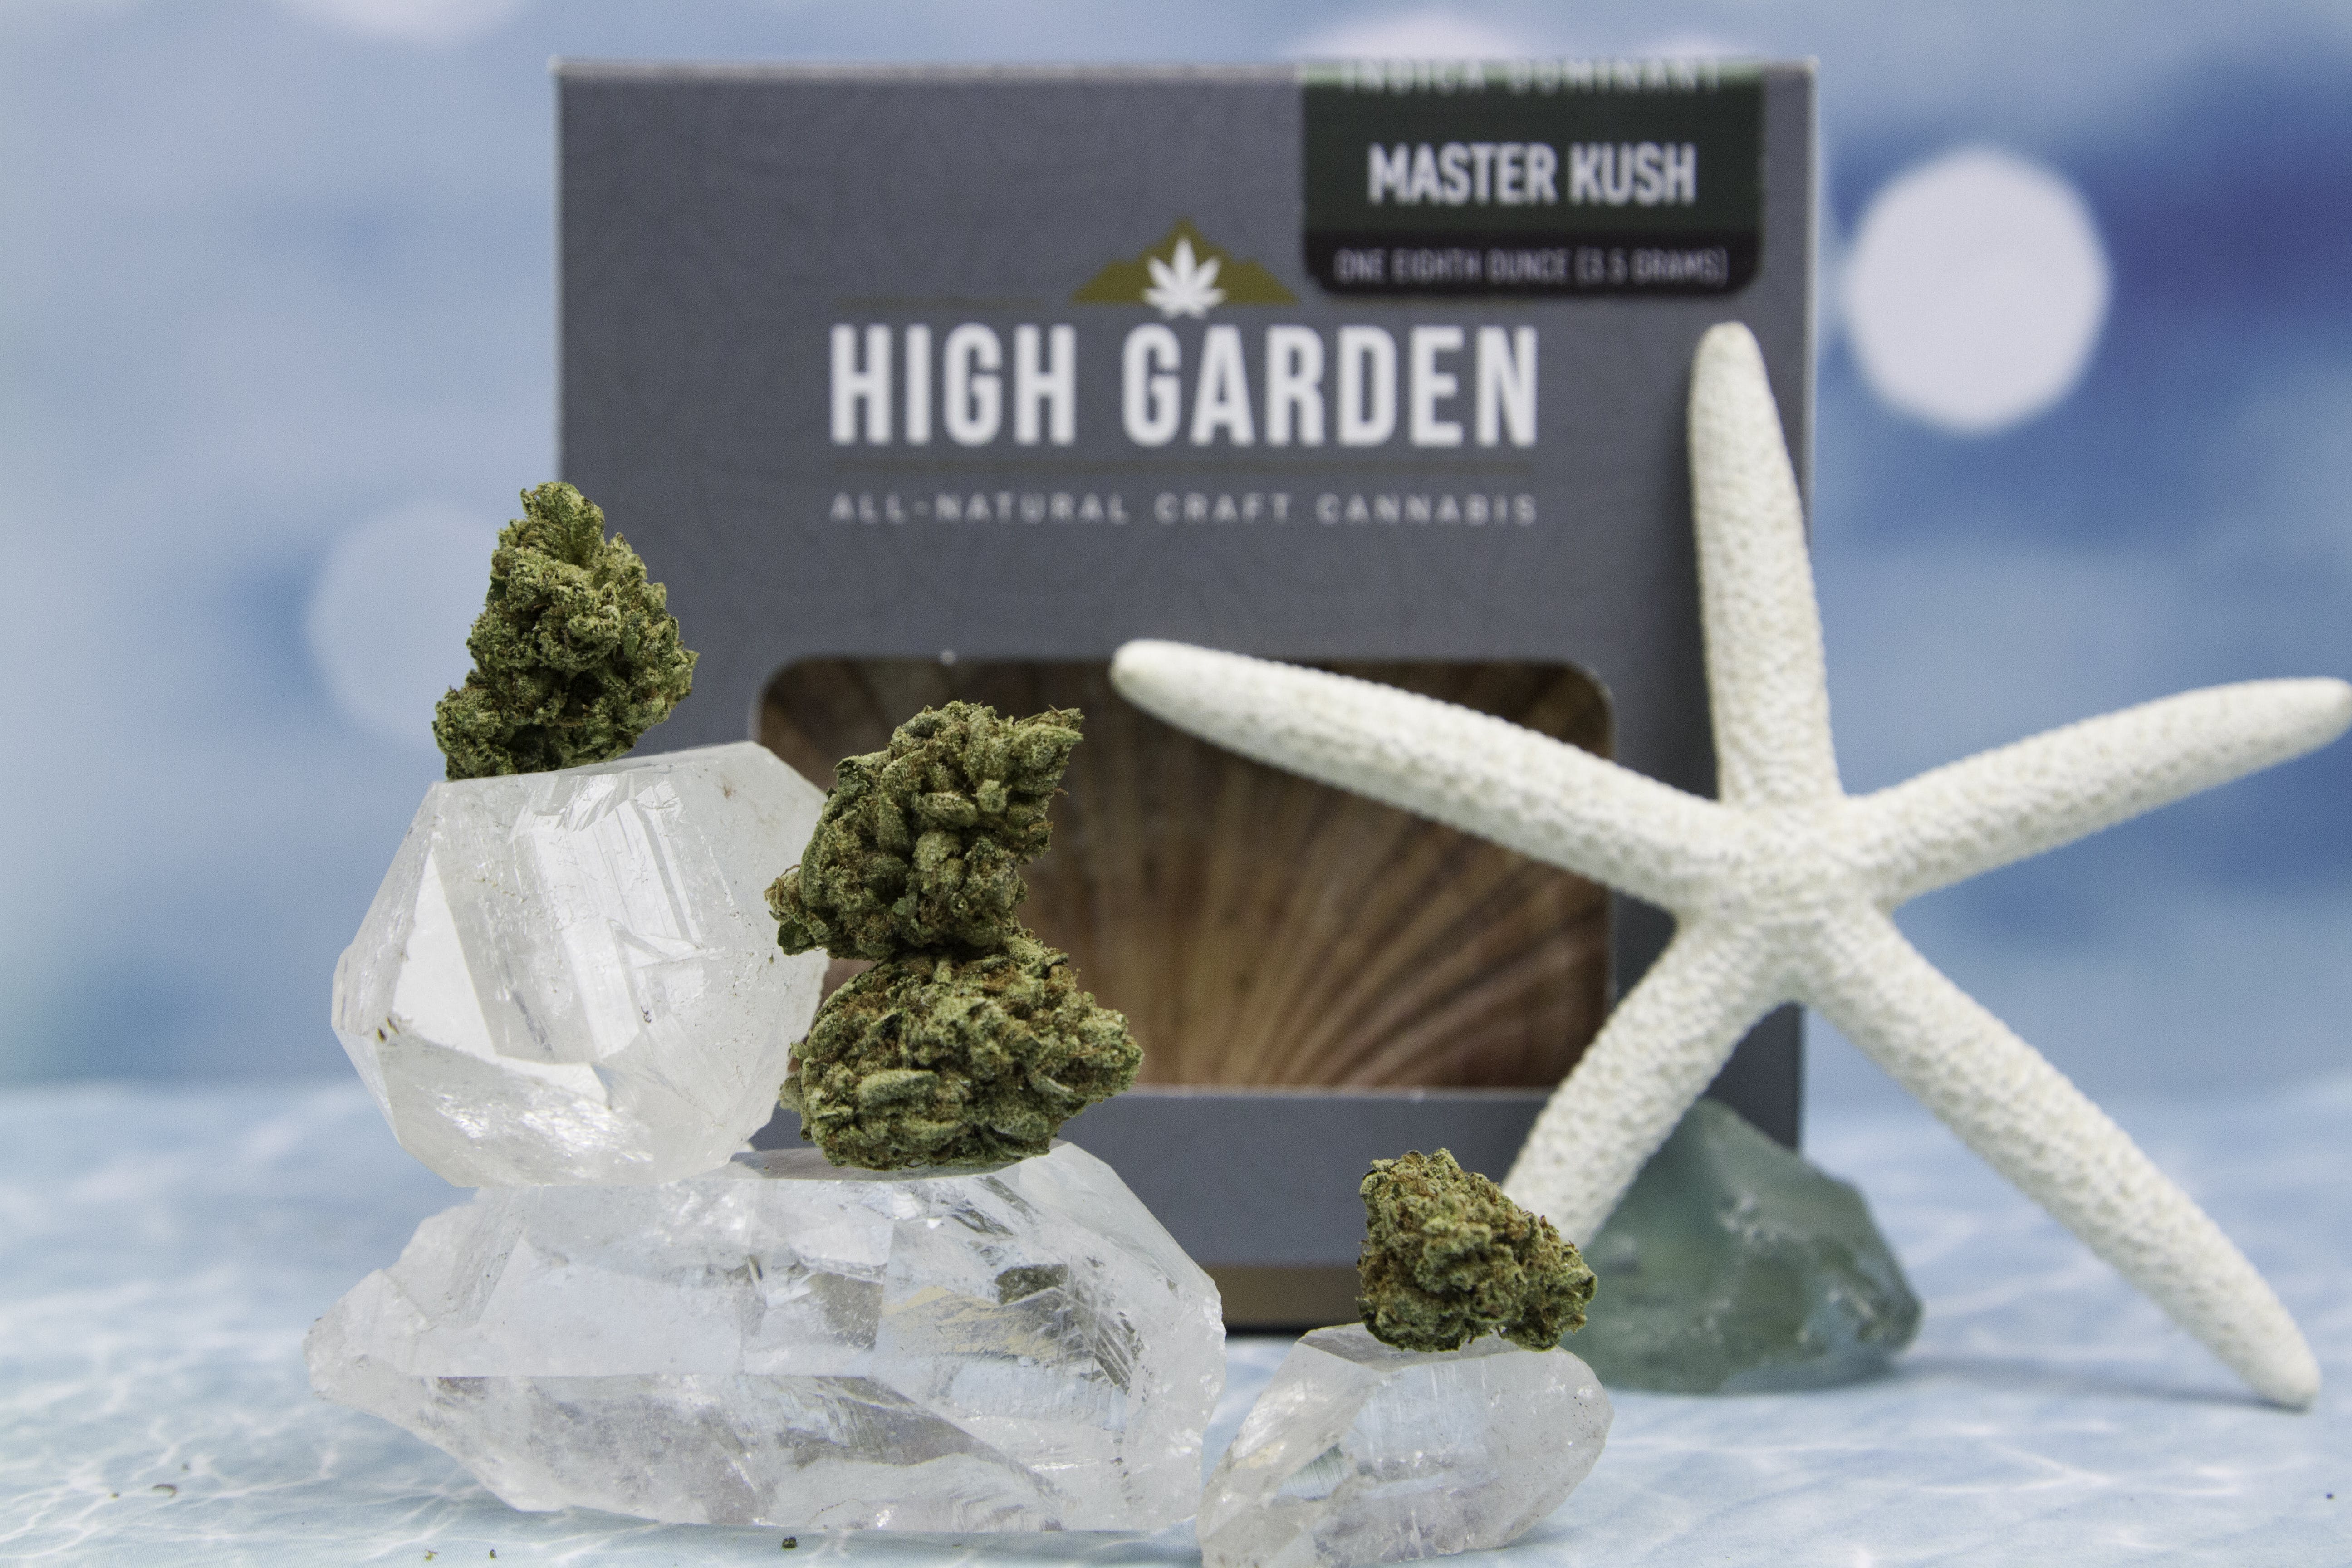 marijuana-dispensaries-22775-pacific-coast-highway-malibu-master-kush-from-high-garden